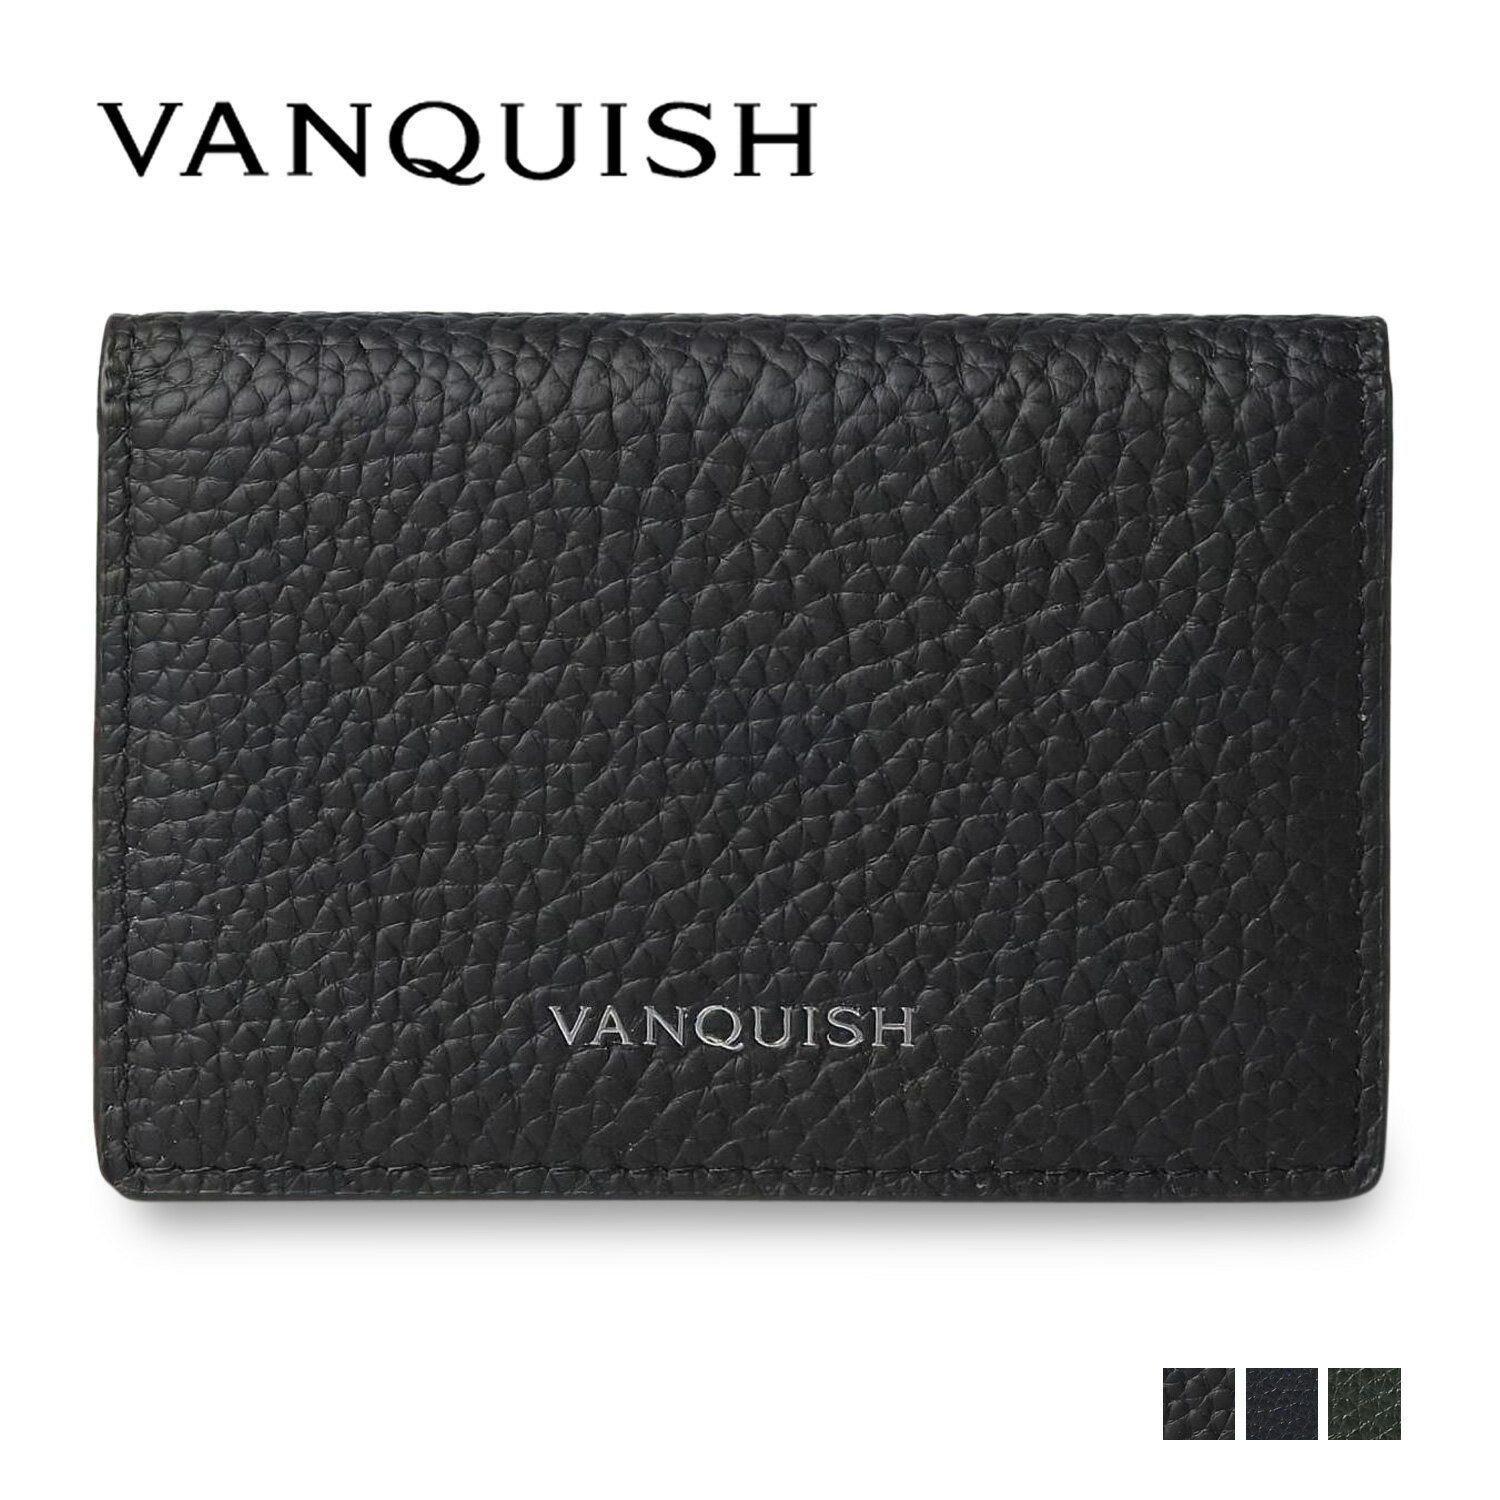 ヴァンキッシュ VANQUISH 名刺入れ 定期入れ カードケース メンズ 本革 CARD CASE ブラック ネイビー ダーク グリーン 黒 43550